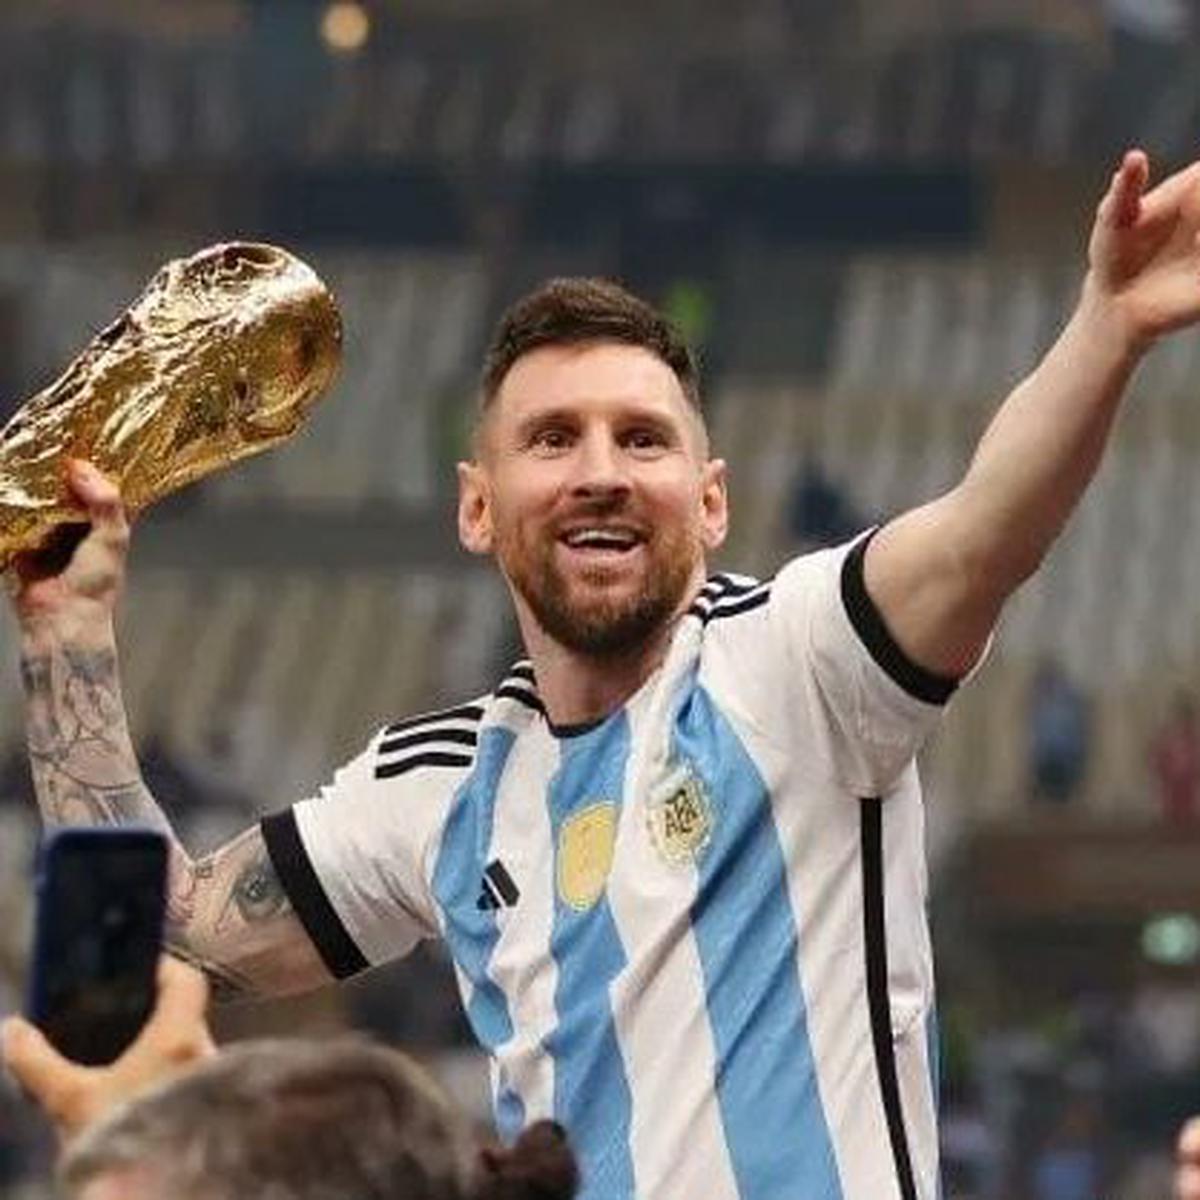 El mensaje de Lionel Messi por la nueva camiseta de la Selección Argentina  - TyC Sports